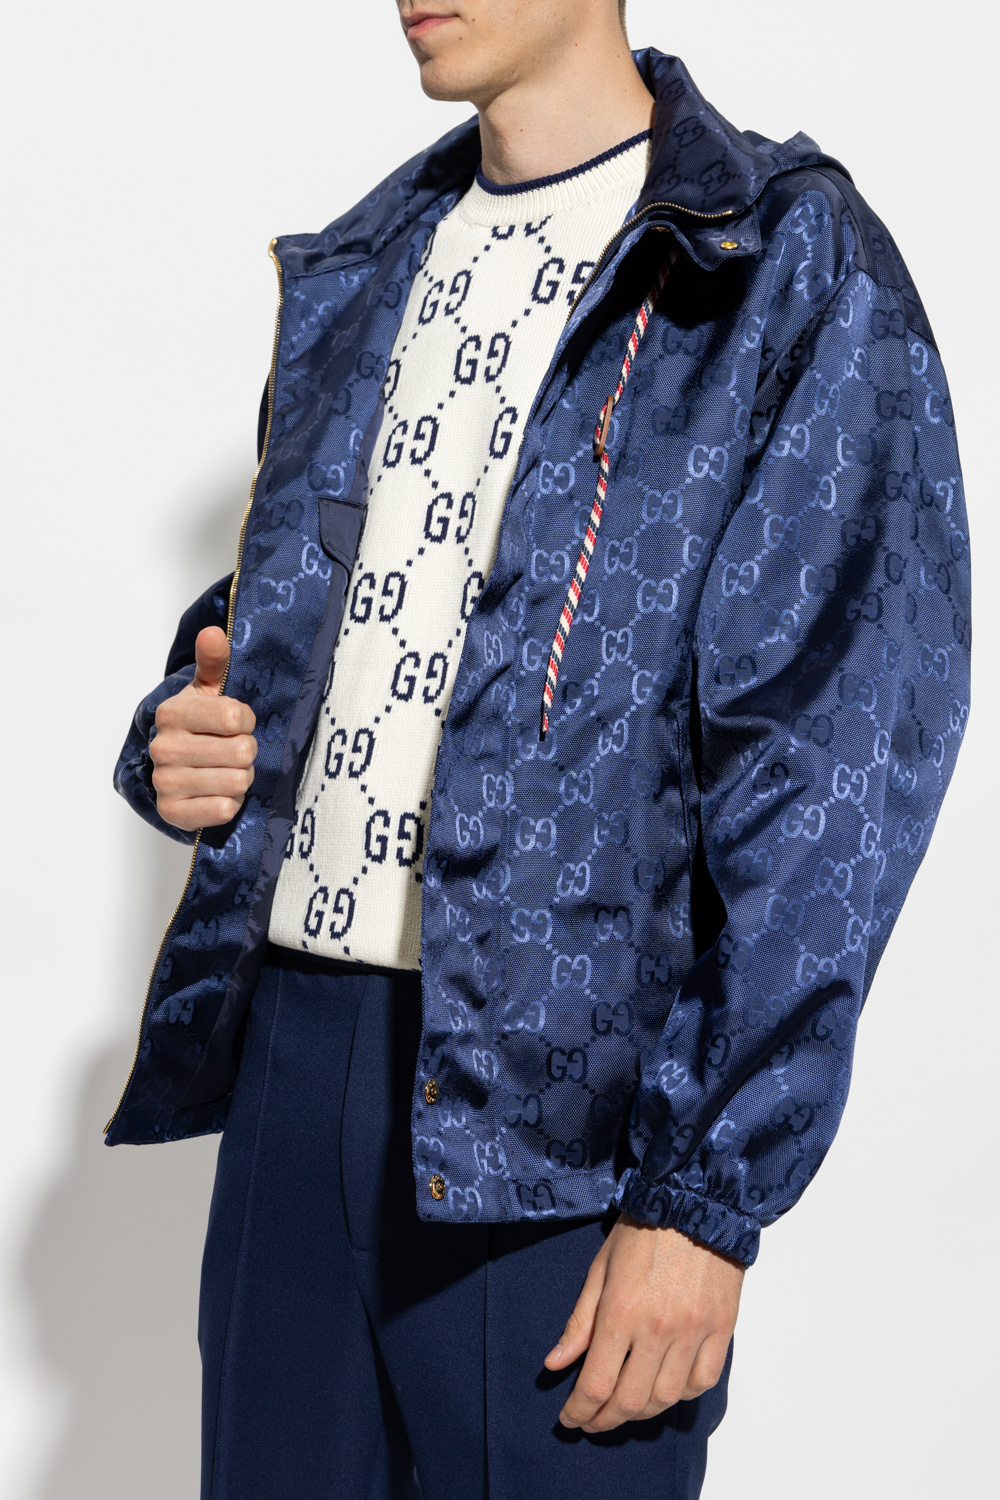 Authentic Men’s Gucci jacket size 50 - M